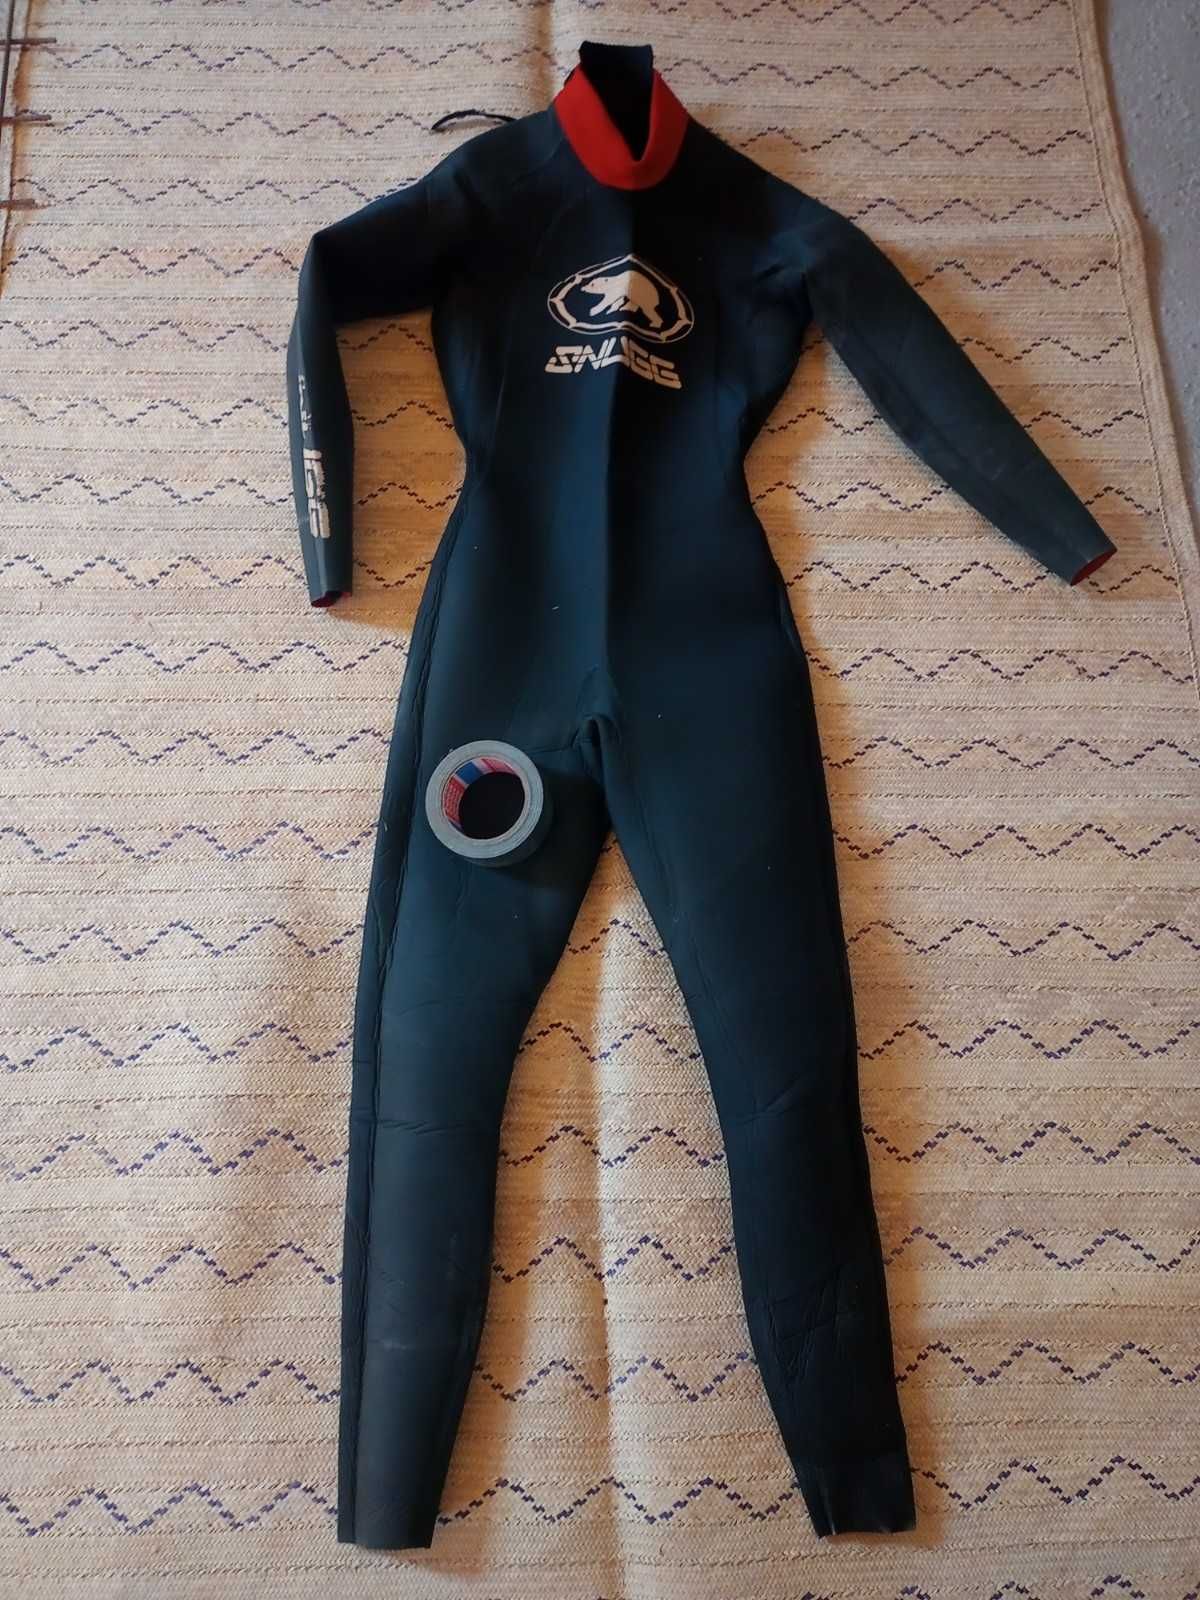 Costum de inot din neopren (Snugg, UK, triathlon wetsuit)